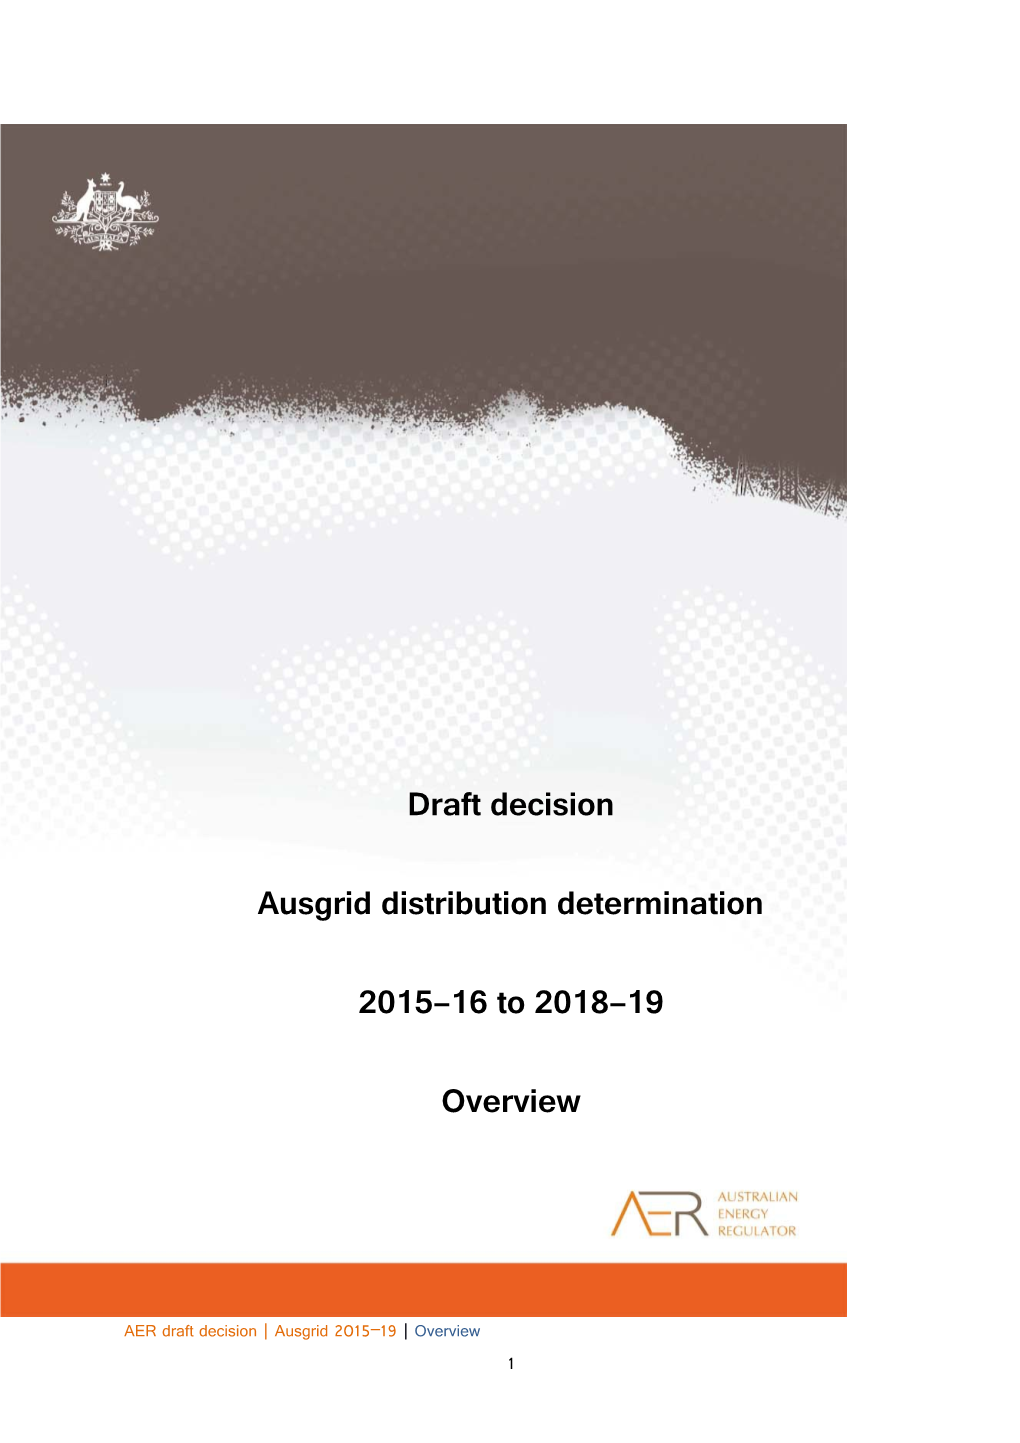 Ausgrid Distribution Determination